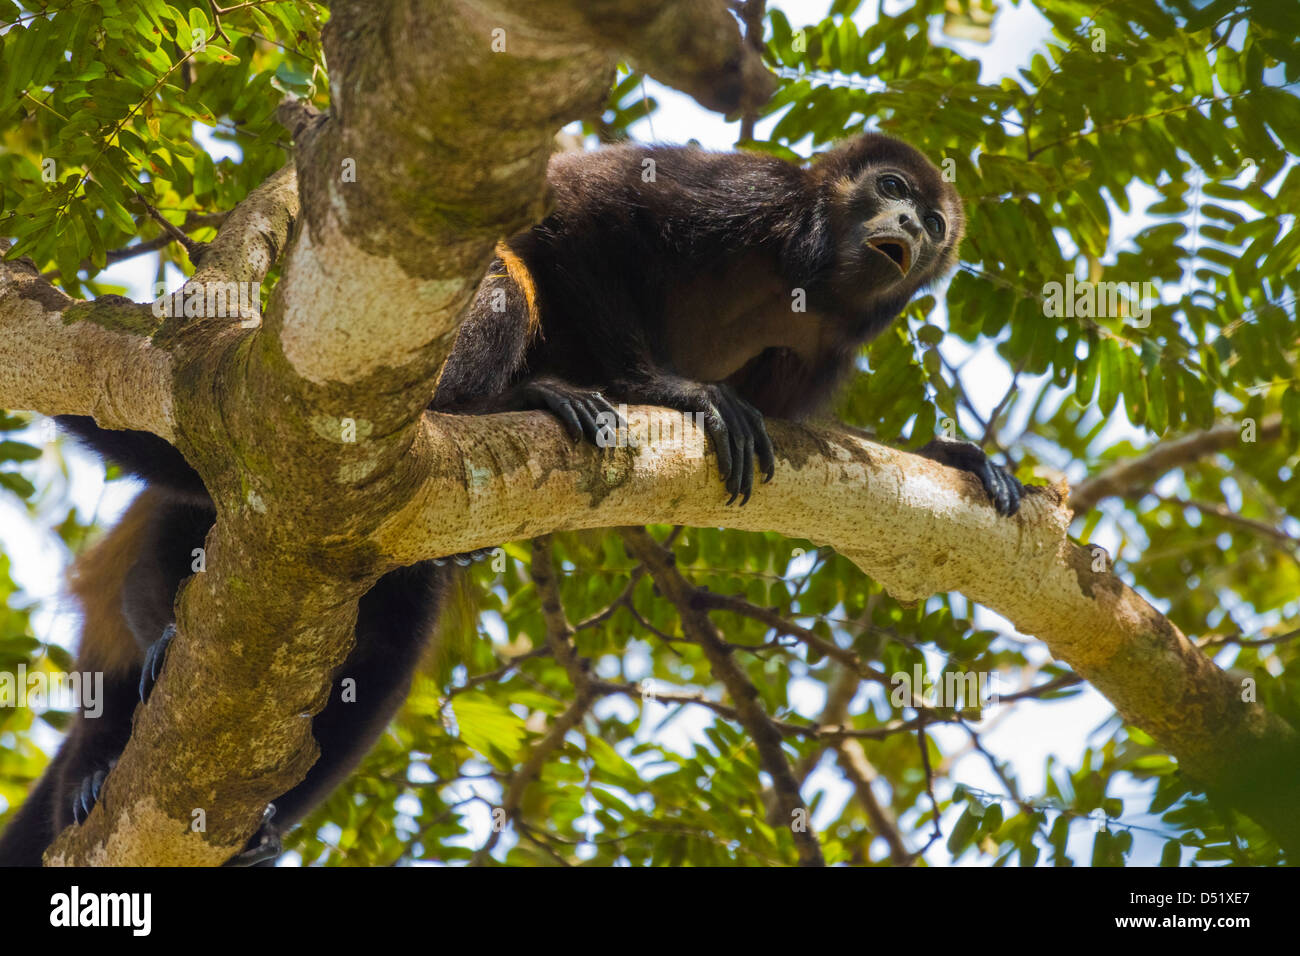 Manteau d'un singe hurleur (Alouatta palliata), ce qui en fait l'appel distinctif d'un arbre ; dans la province de Guanacaste, Nosara, Costa Rica Banque D'Images